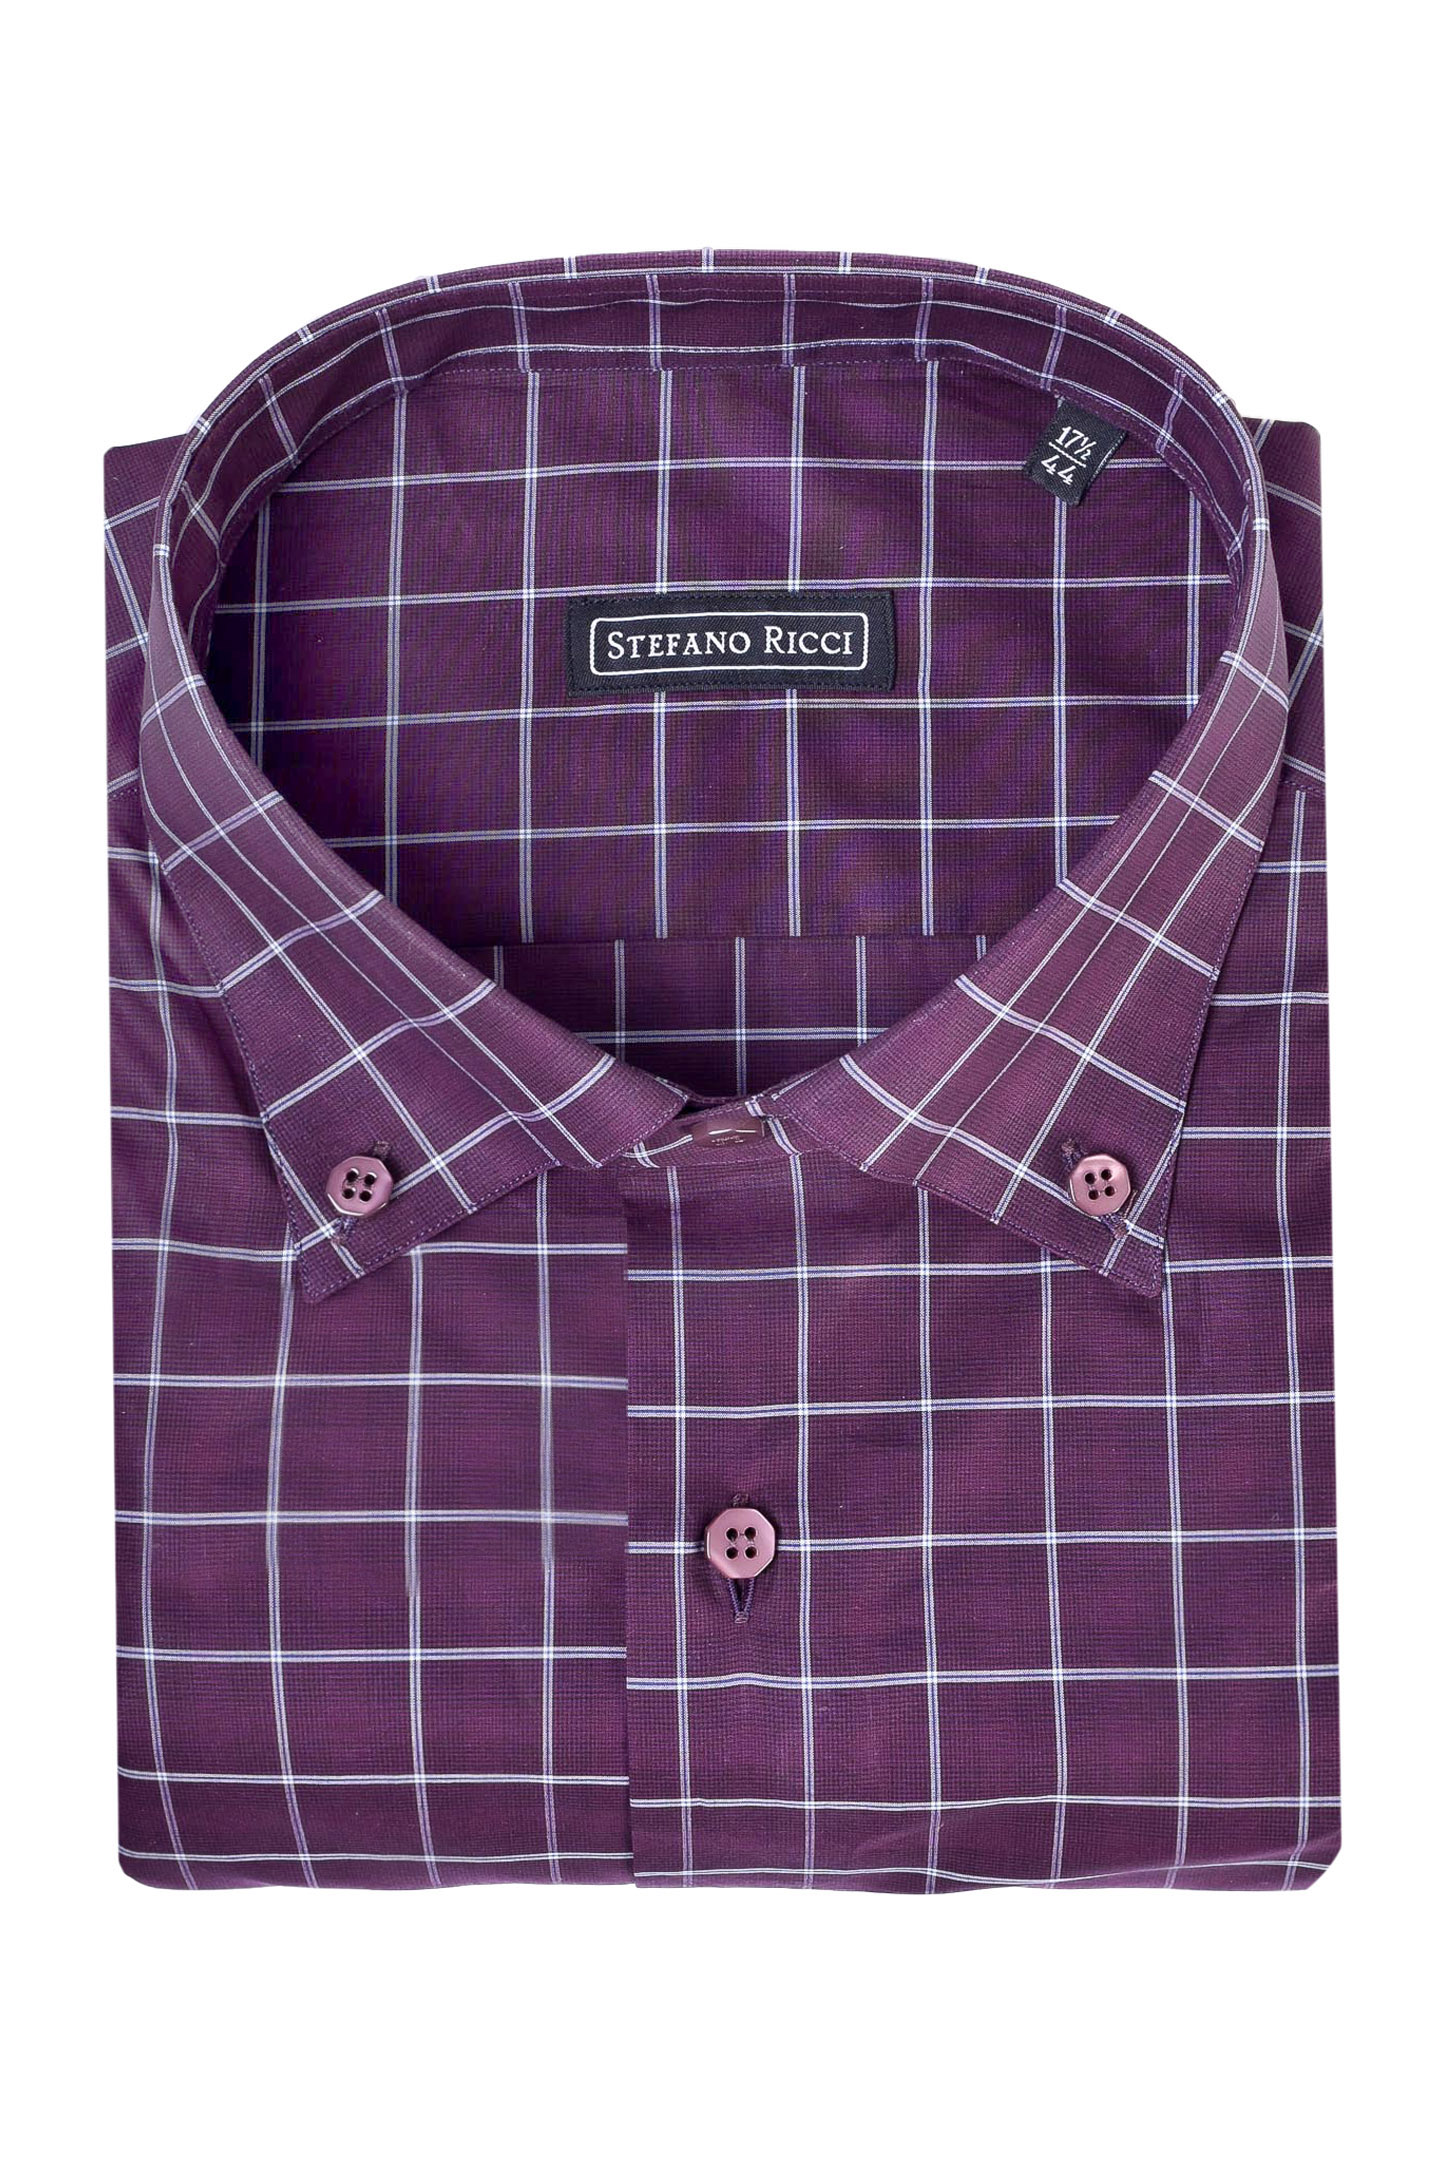 Рубашка STEFANO RICCI MC004305 L2023, цвет: Фиолетовый, Мужской